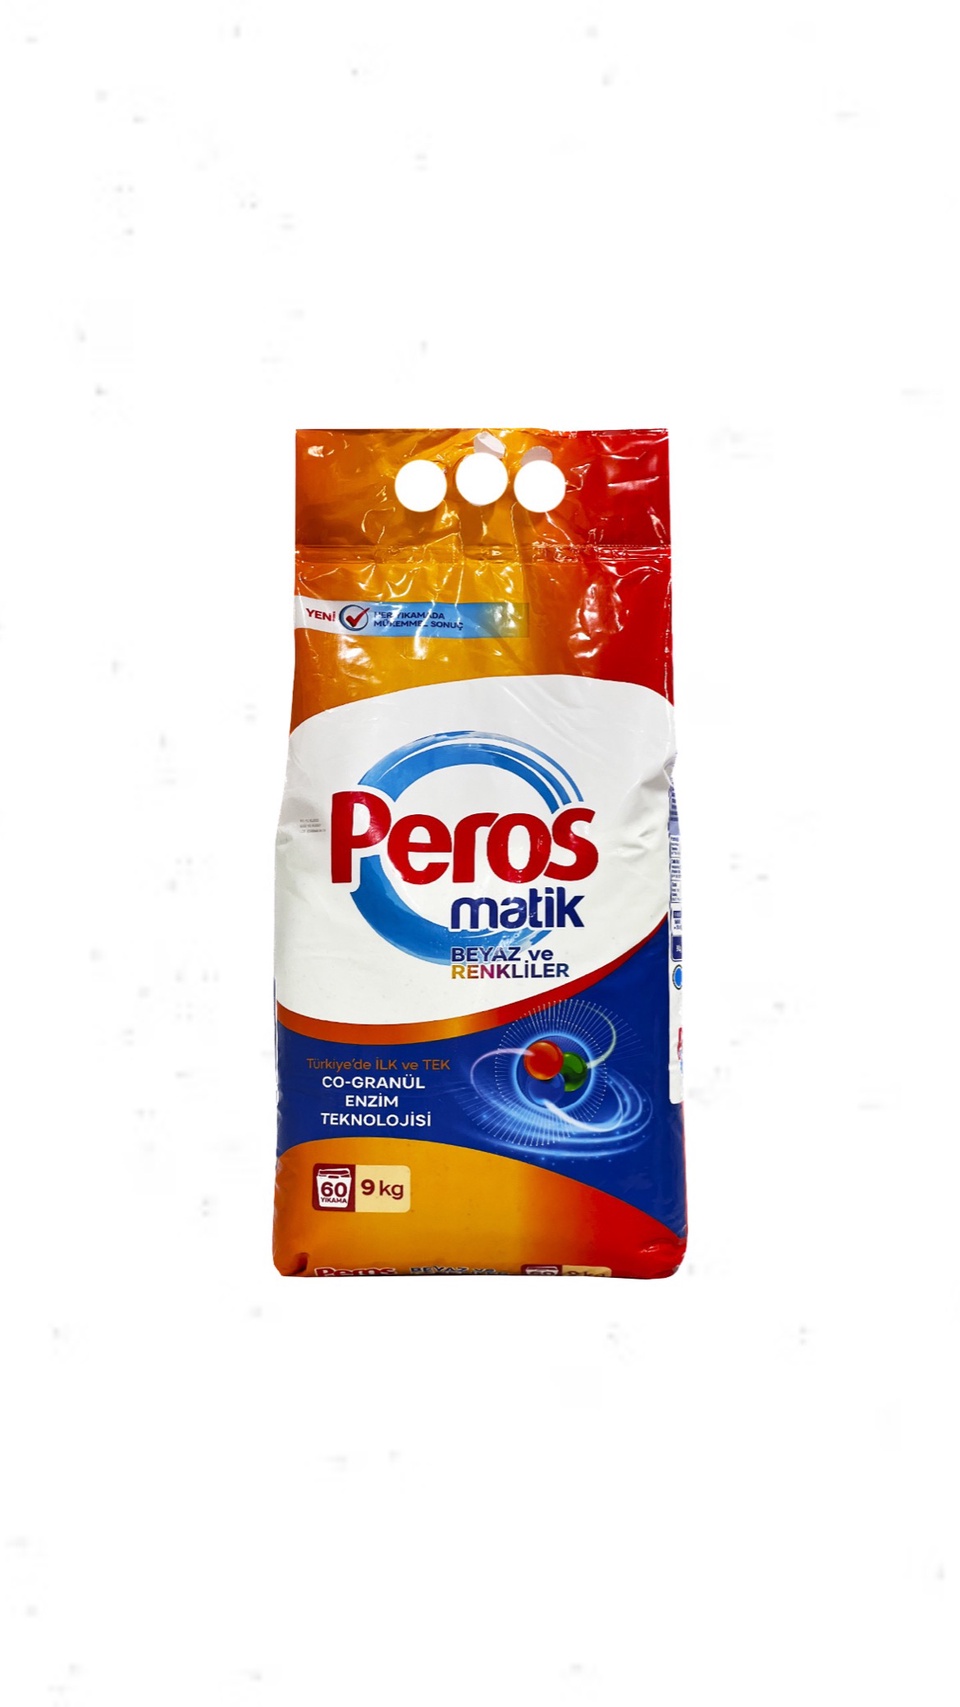 Стиральный порошок автомат для белого и цветного белья Peros гипоаллергенный экo 9 кг - 1 350 ₽, заказать онлайн.